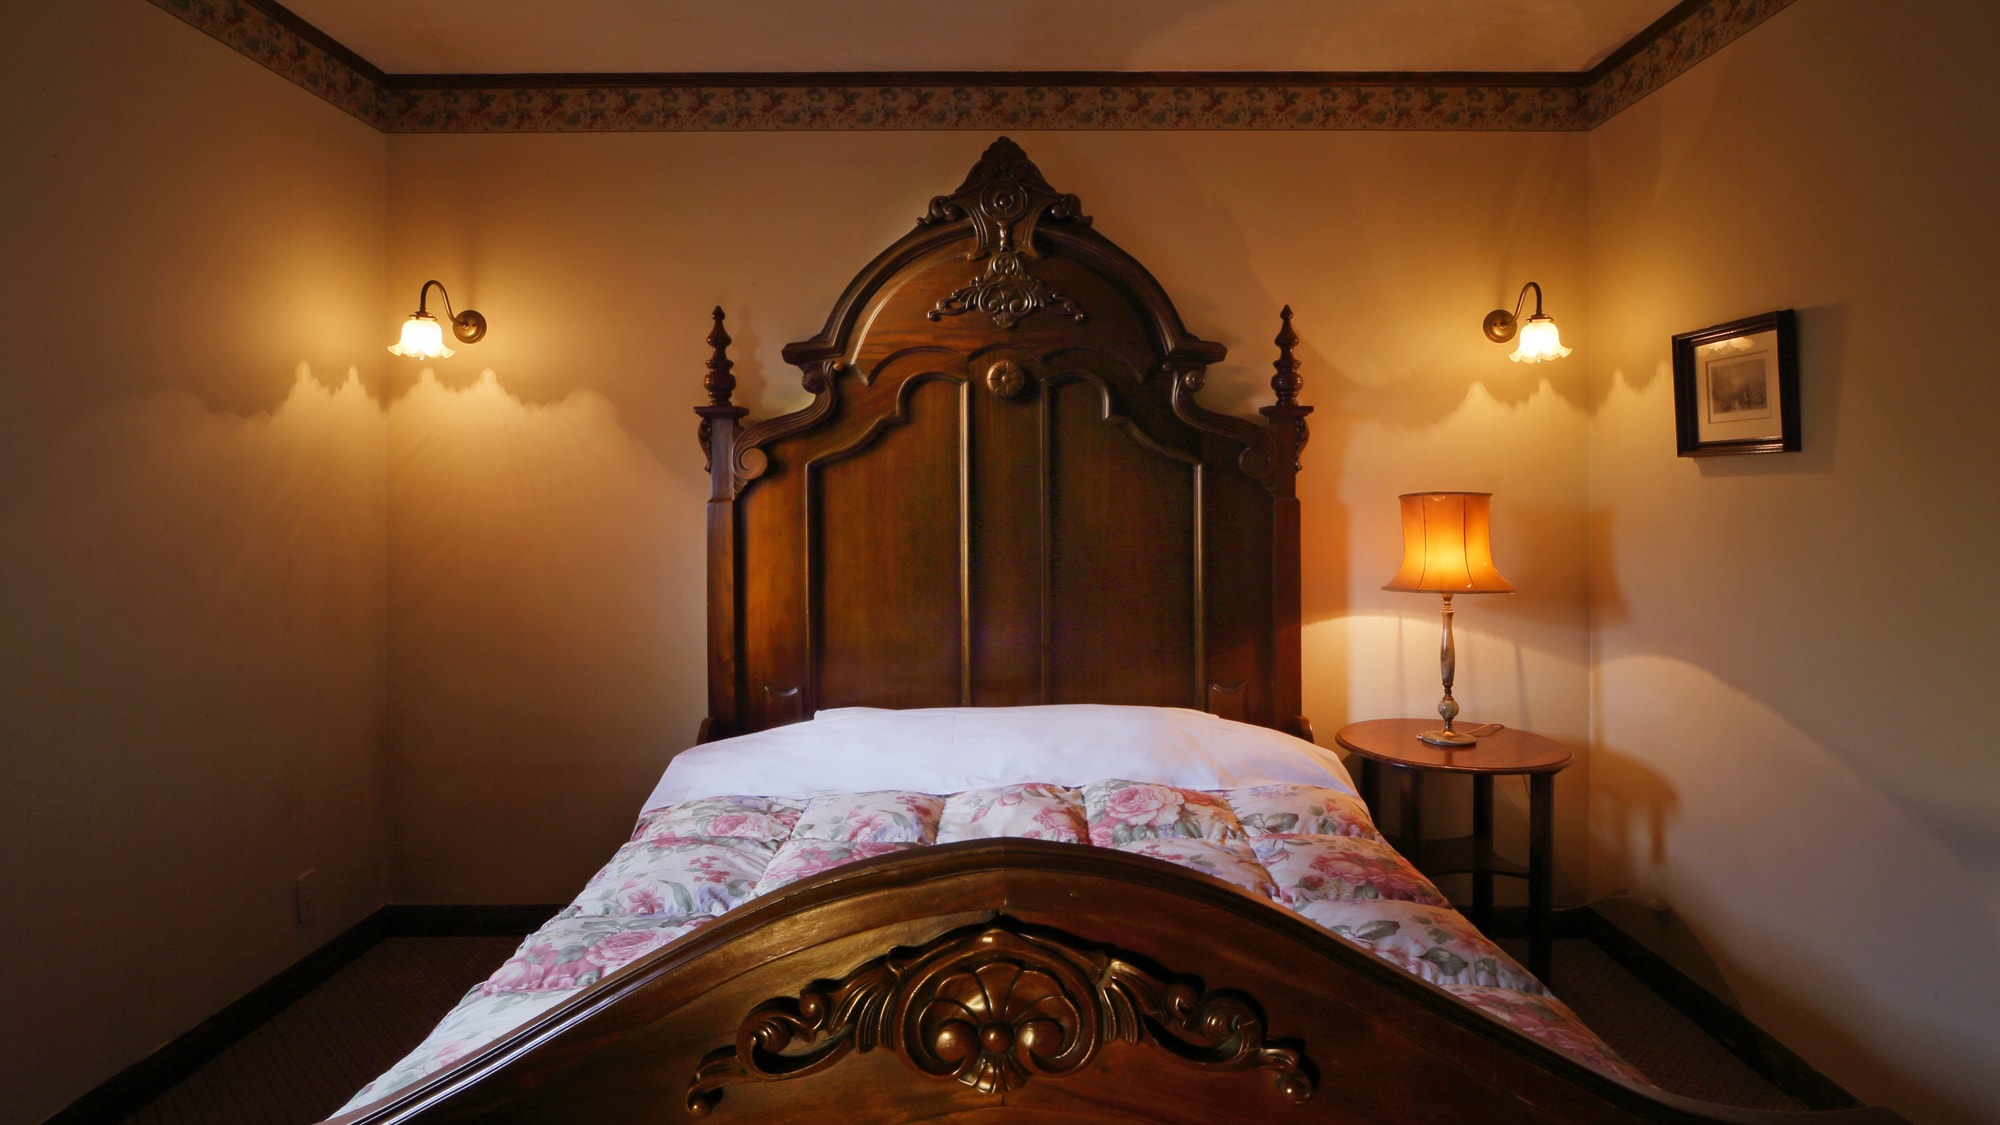 Kamar 302 Beraksen dengan tempat tidur bergaya Eropa yang didatangkan langsung dari Inggris